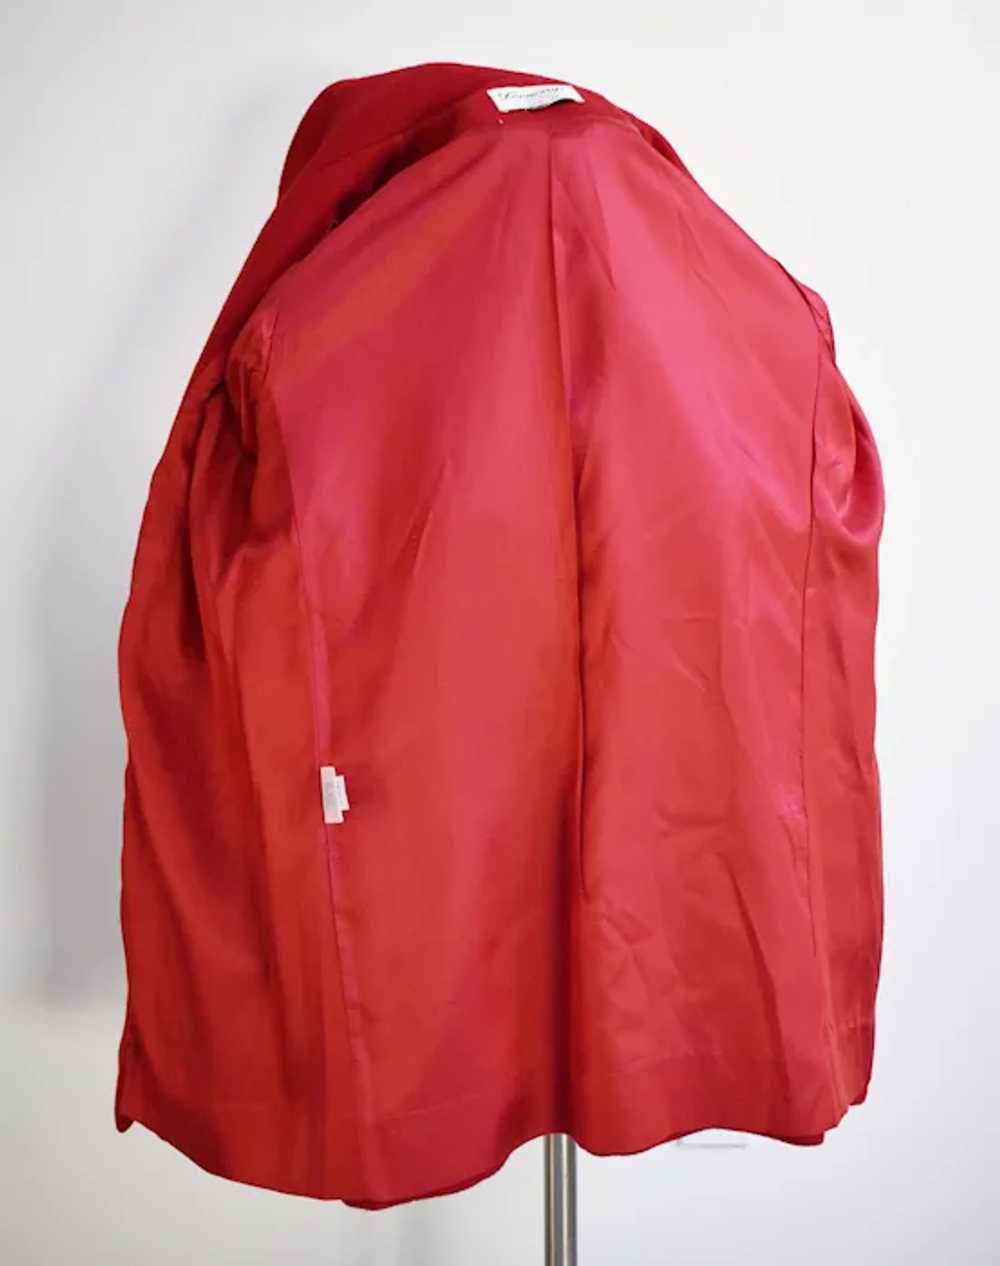 Red wool coat Ferncroft size 6, stylish elegant b… - image 8